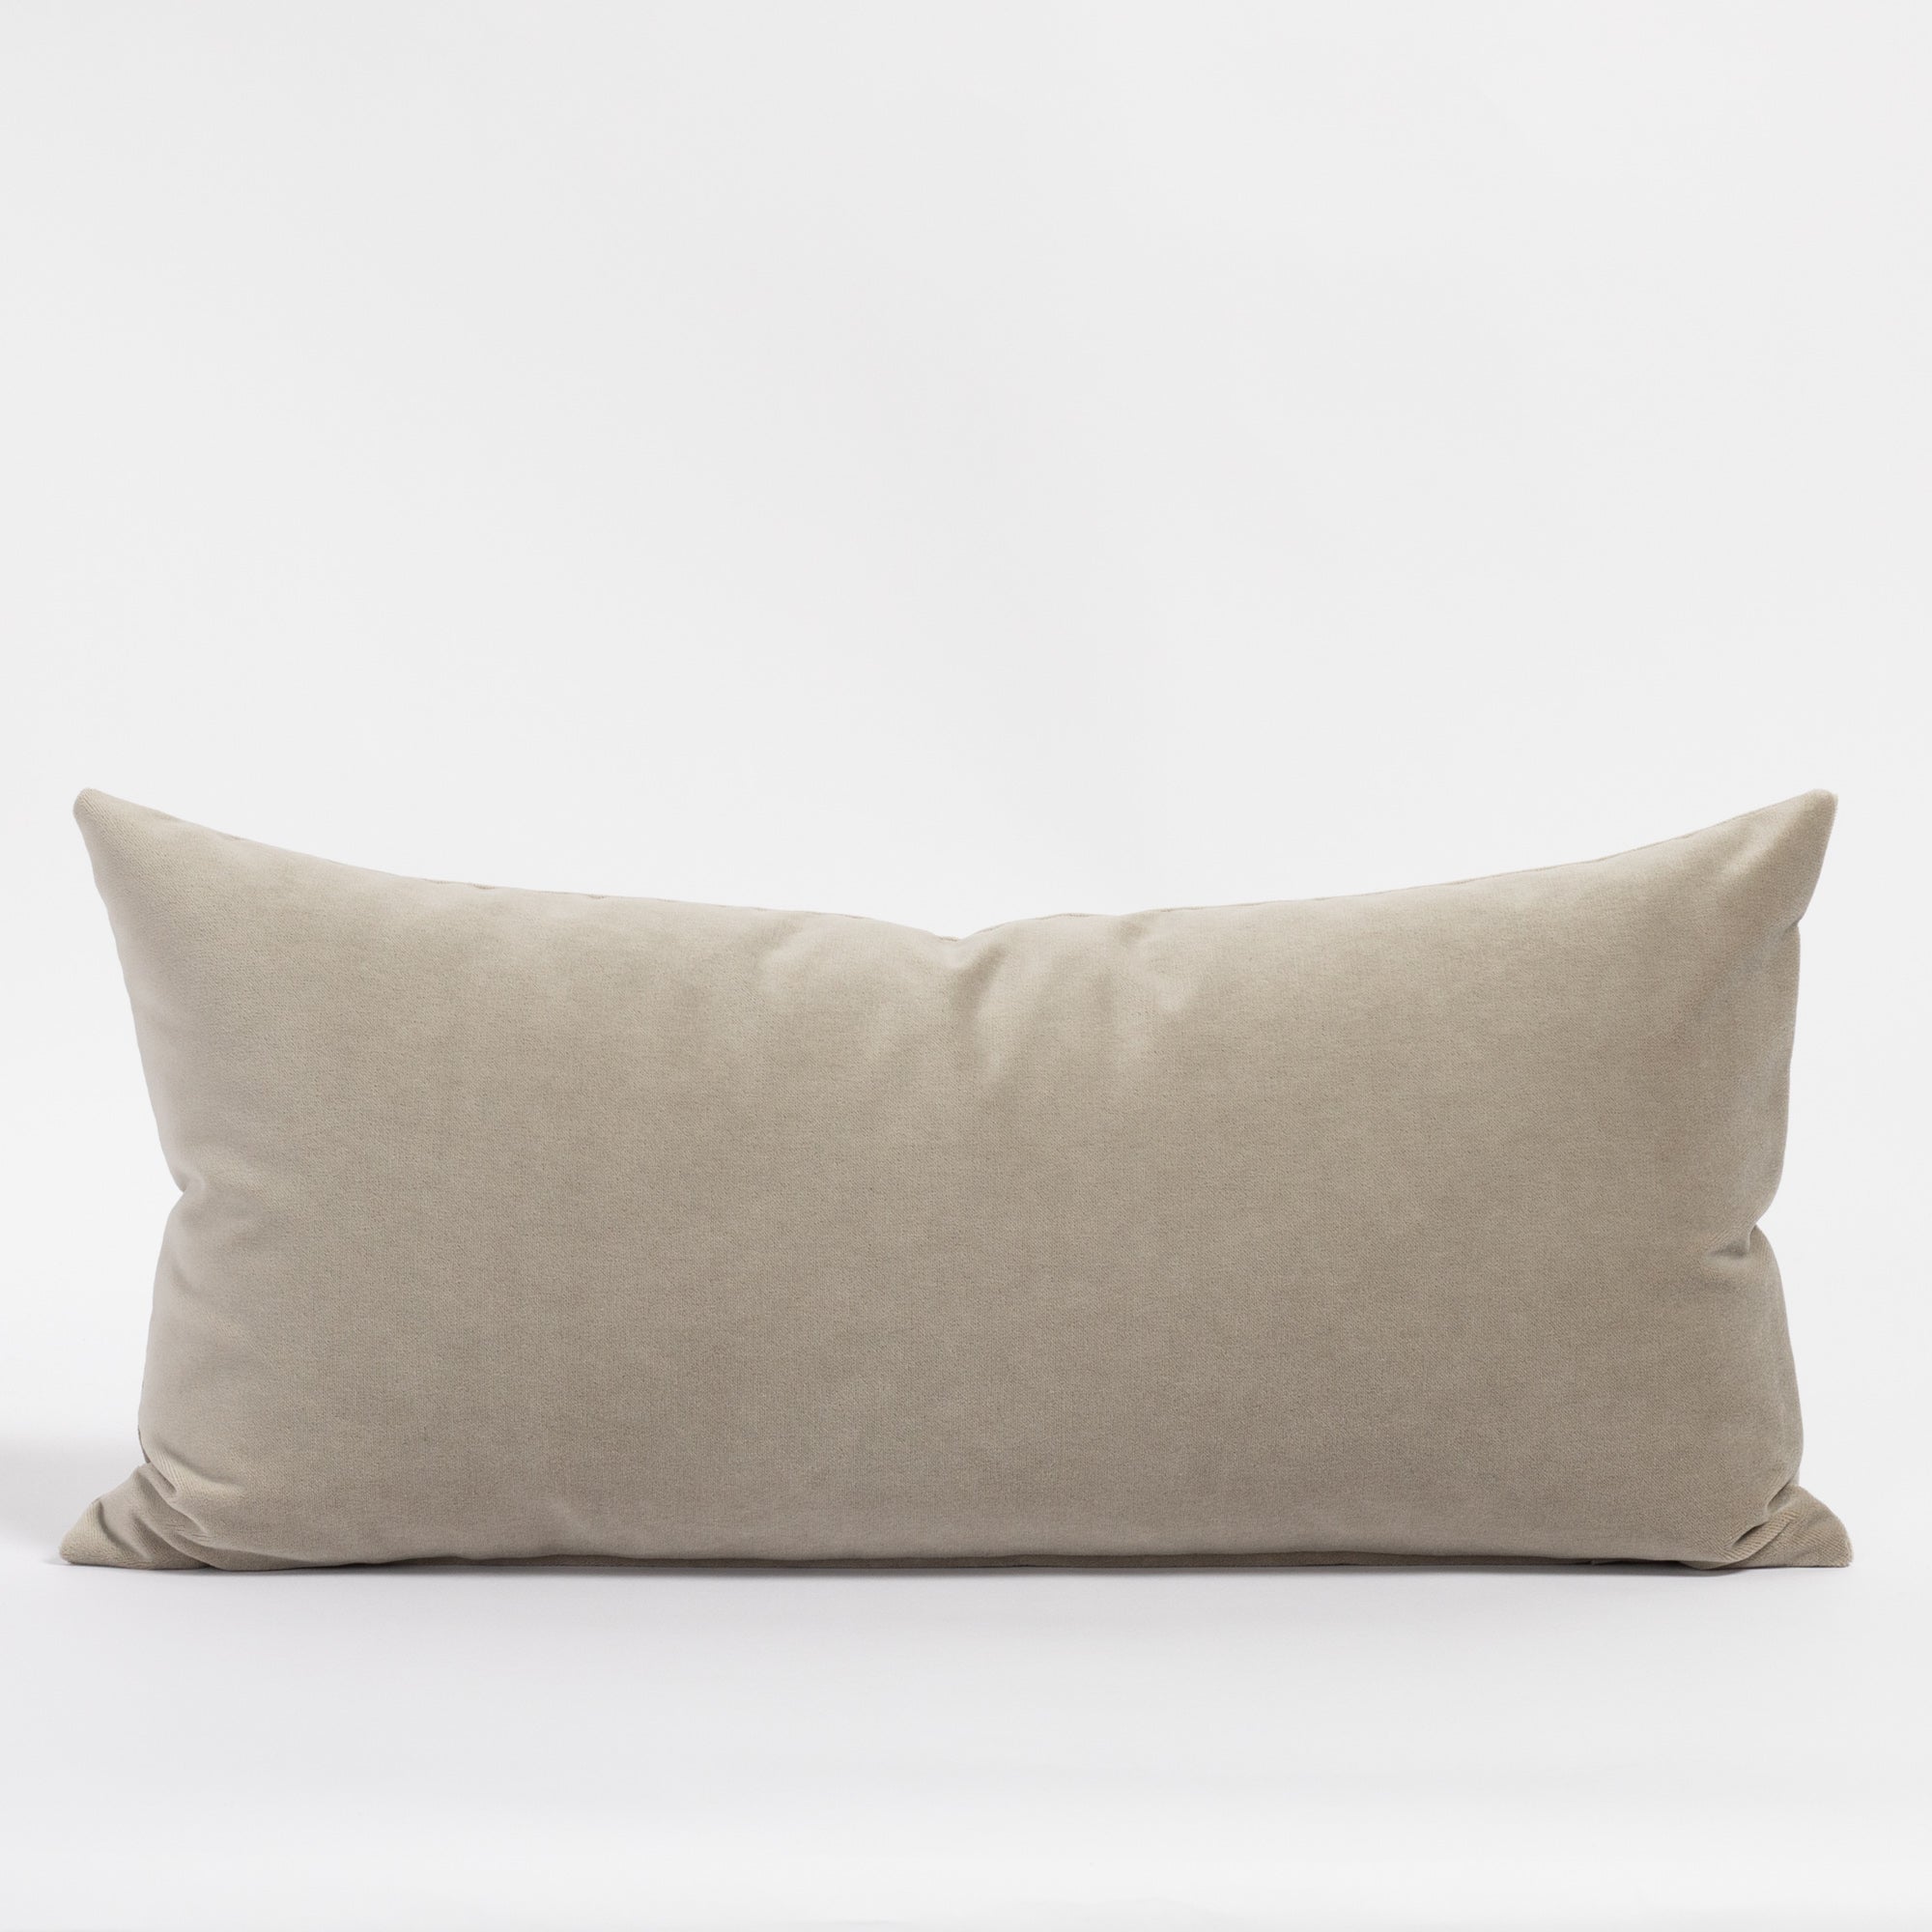 Mason velvet 12x24 lumbar pillow, a mid gray velvet pillow from Tonic Living